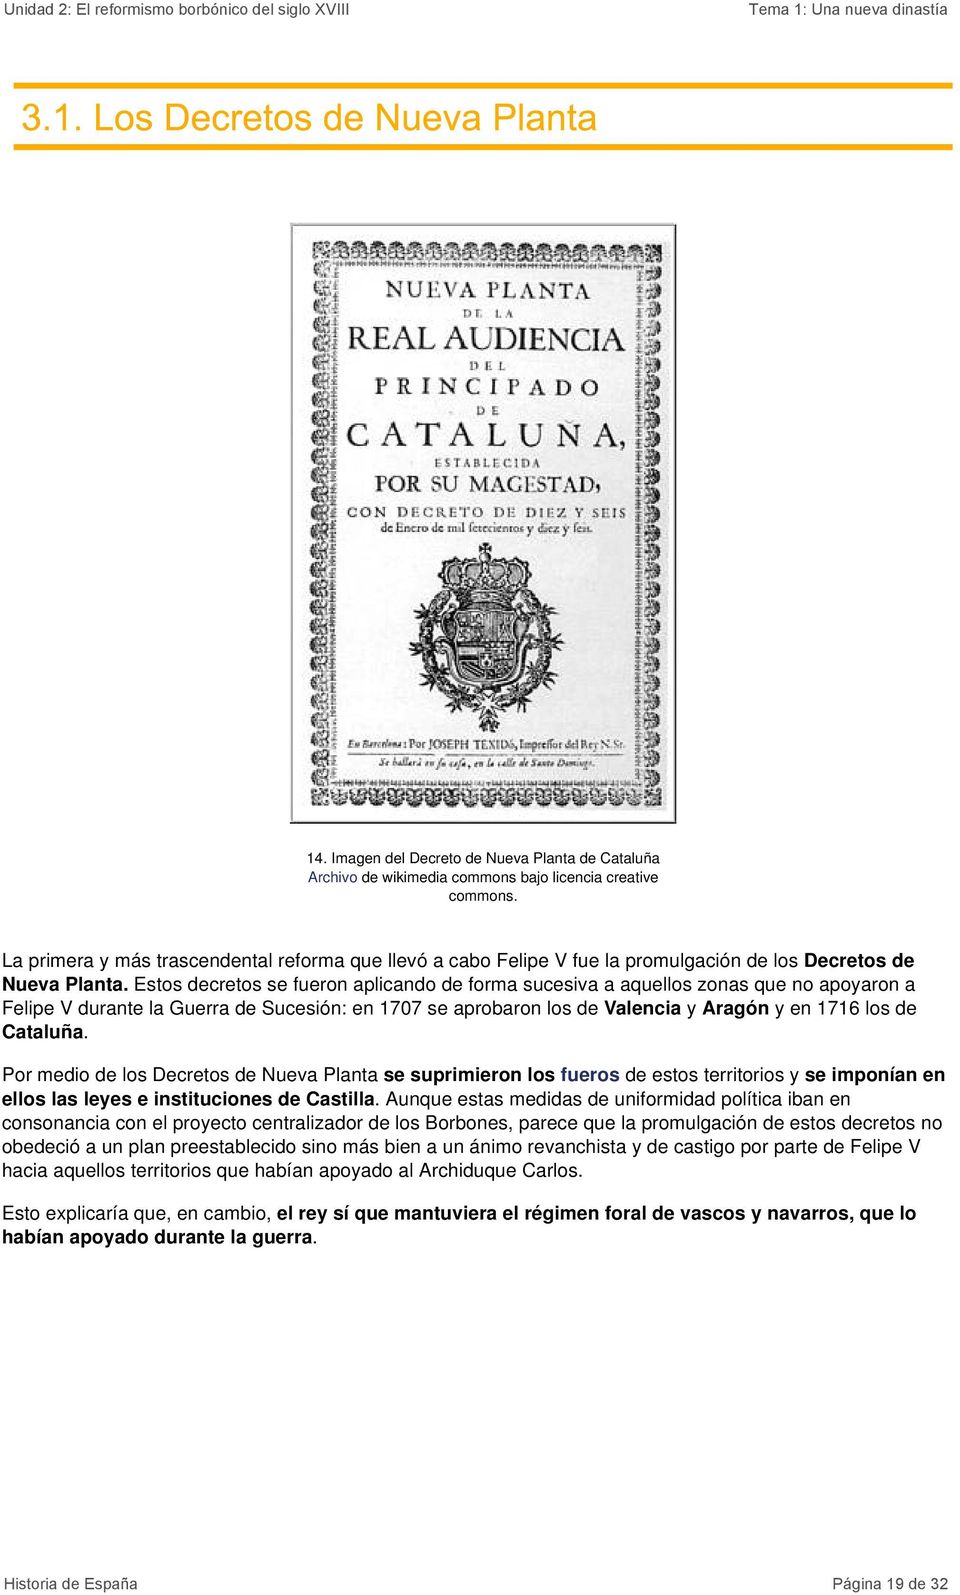 Estos decretos se fueron aplicando de forma sucesiva a aquellos zonas que no apoyaron a Felipe V durante la Guerra de Sucesión: en 1707 se aprobaron los de Valencia y Aragón y en 1716 los de Cataluña.